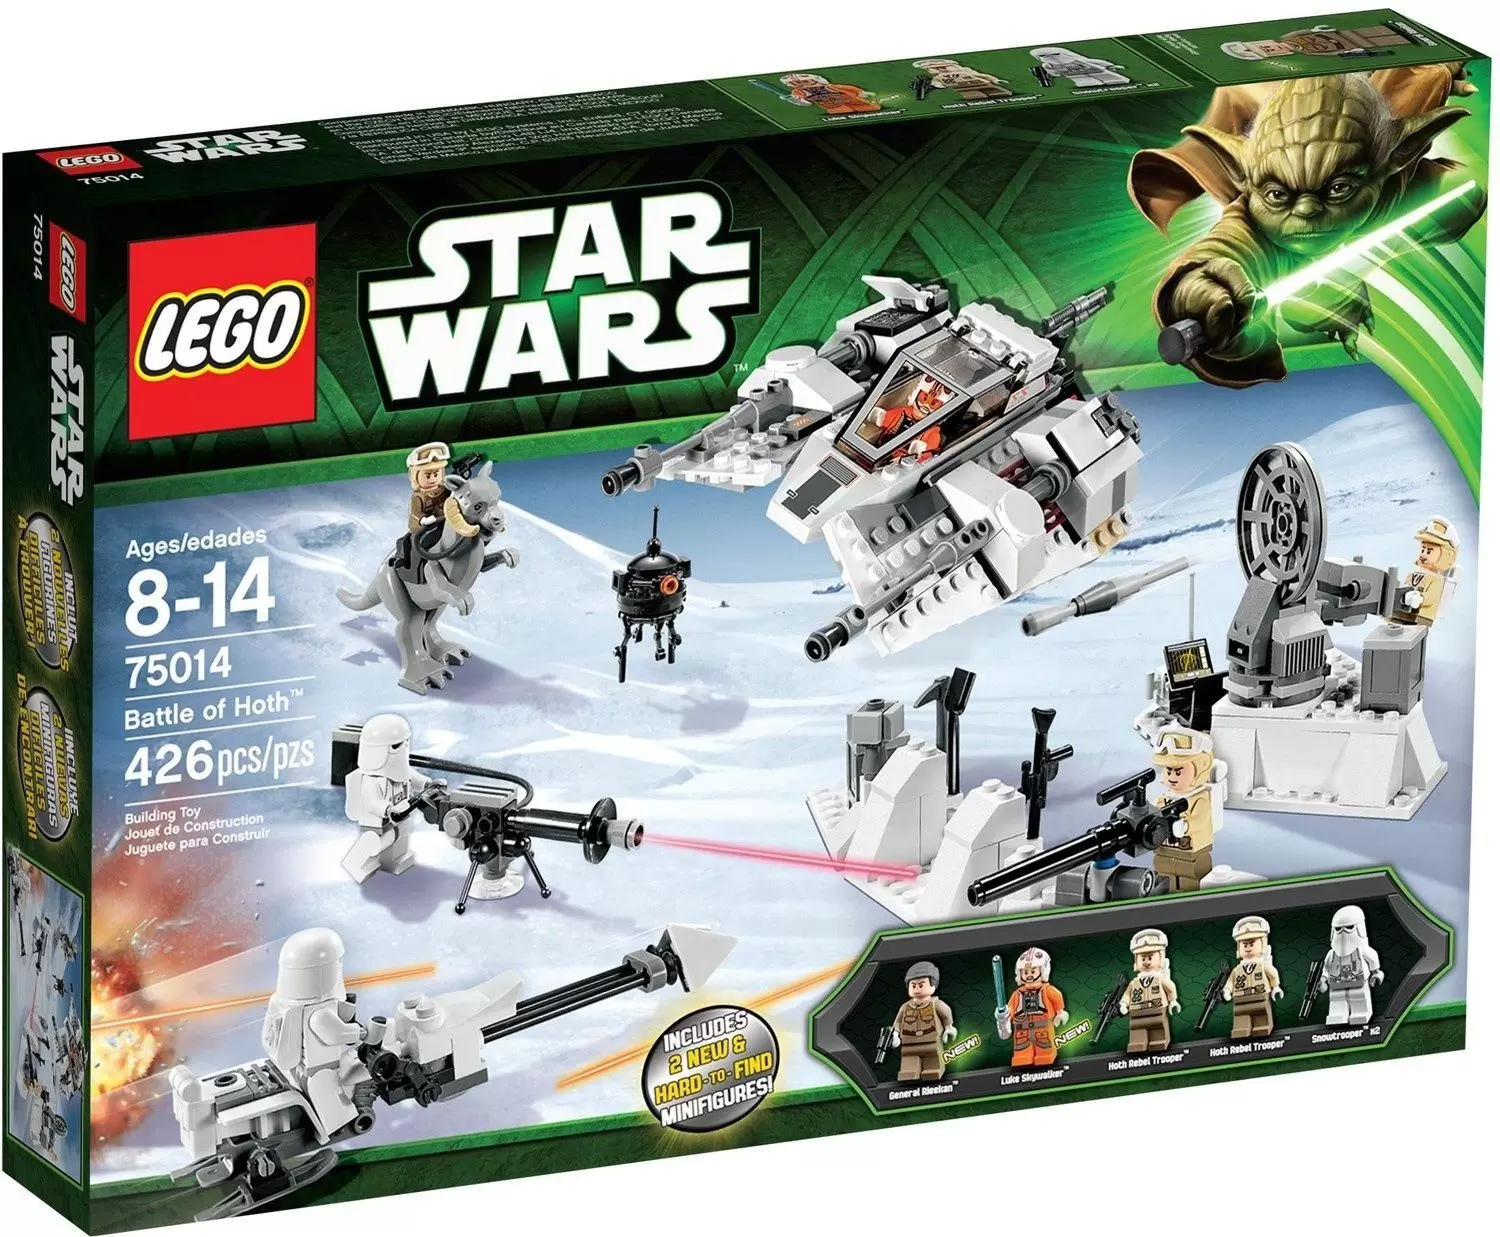 LEGO Star Wars - Battle of Hoth